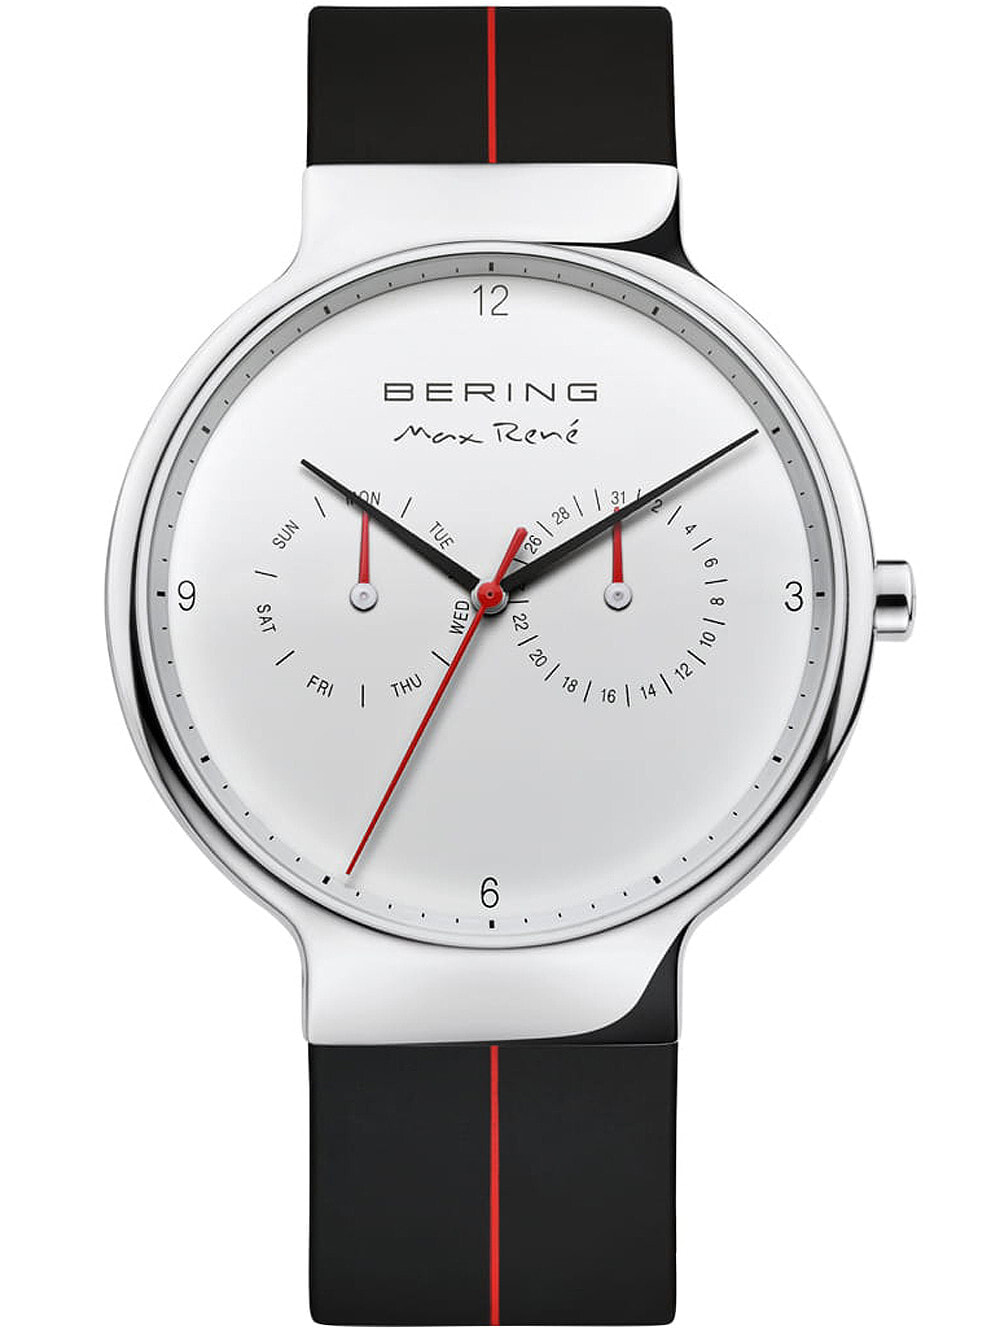 Мужские наручные часы с черным резиновым ремешком  Bering 15542-404 Max Ren mens 42mm 5ATM